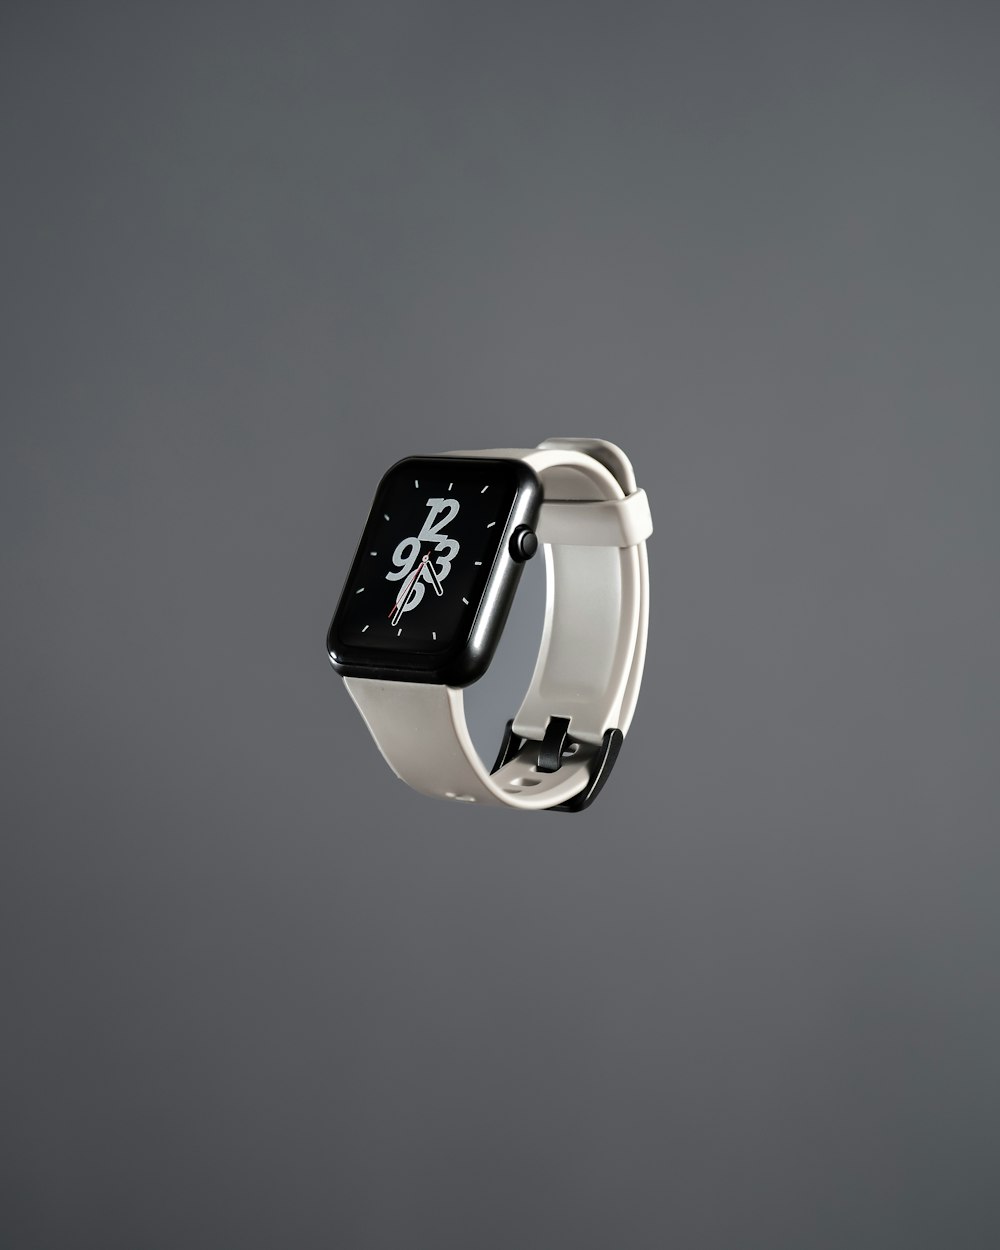 Eine Apple Watch mit einer schwarz-weißen Uhr darauf